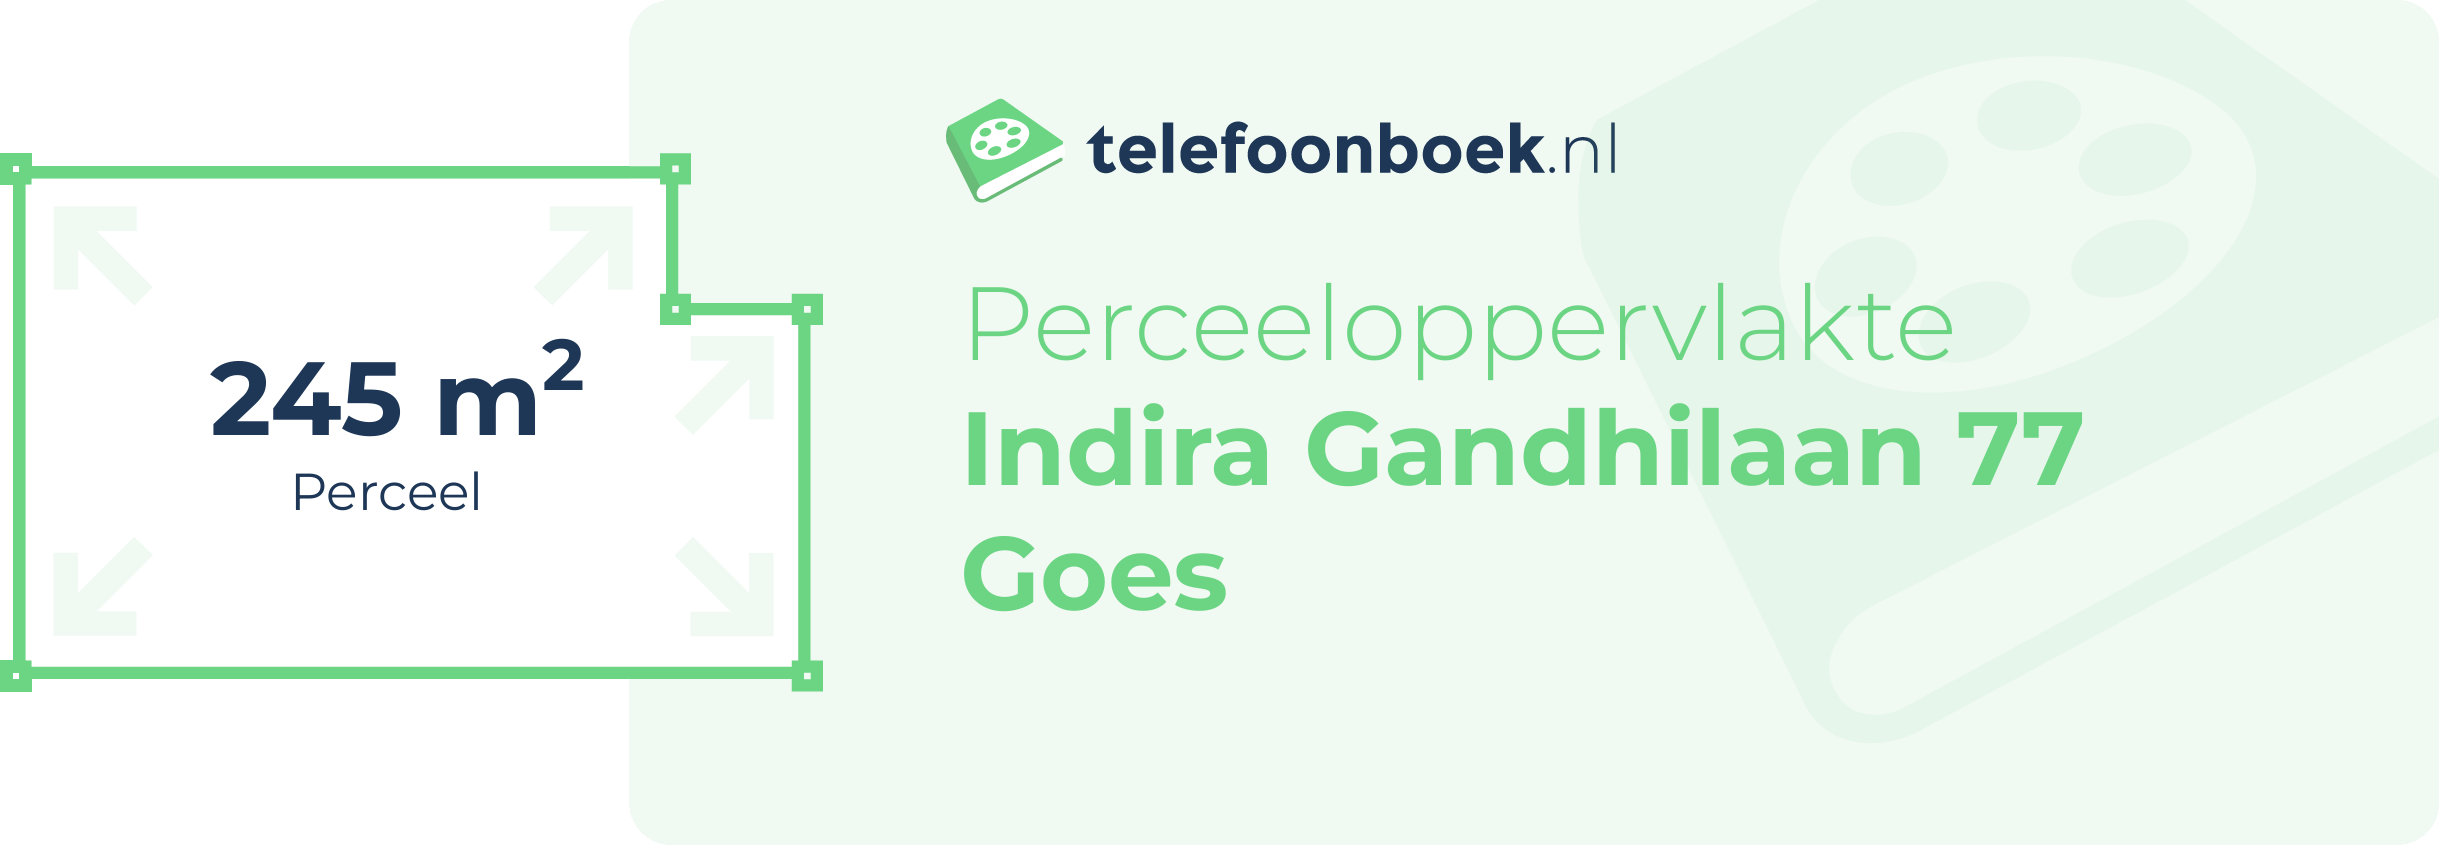 Perceeloppervlakte Indira Gandhilaan 77 Goes